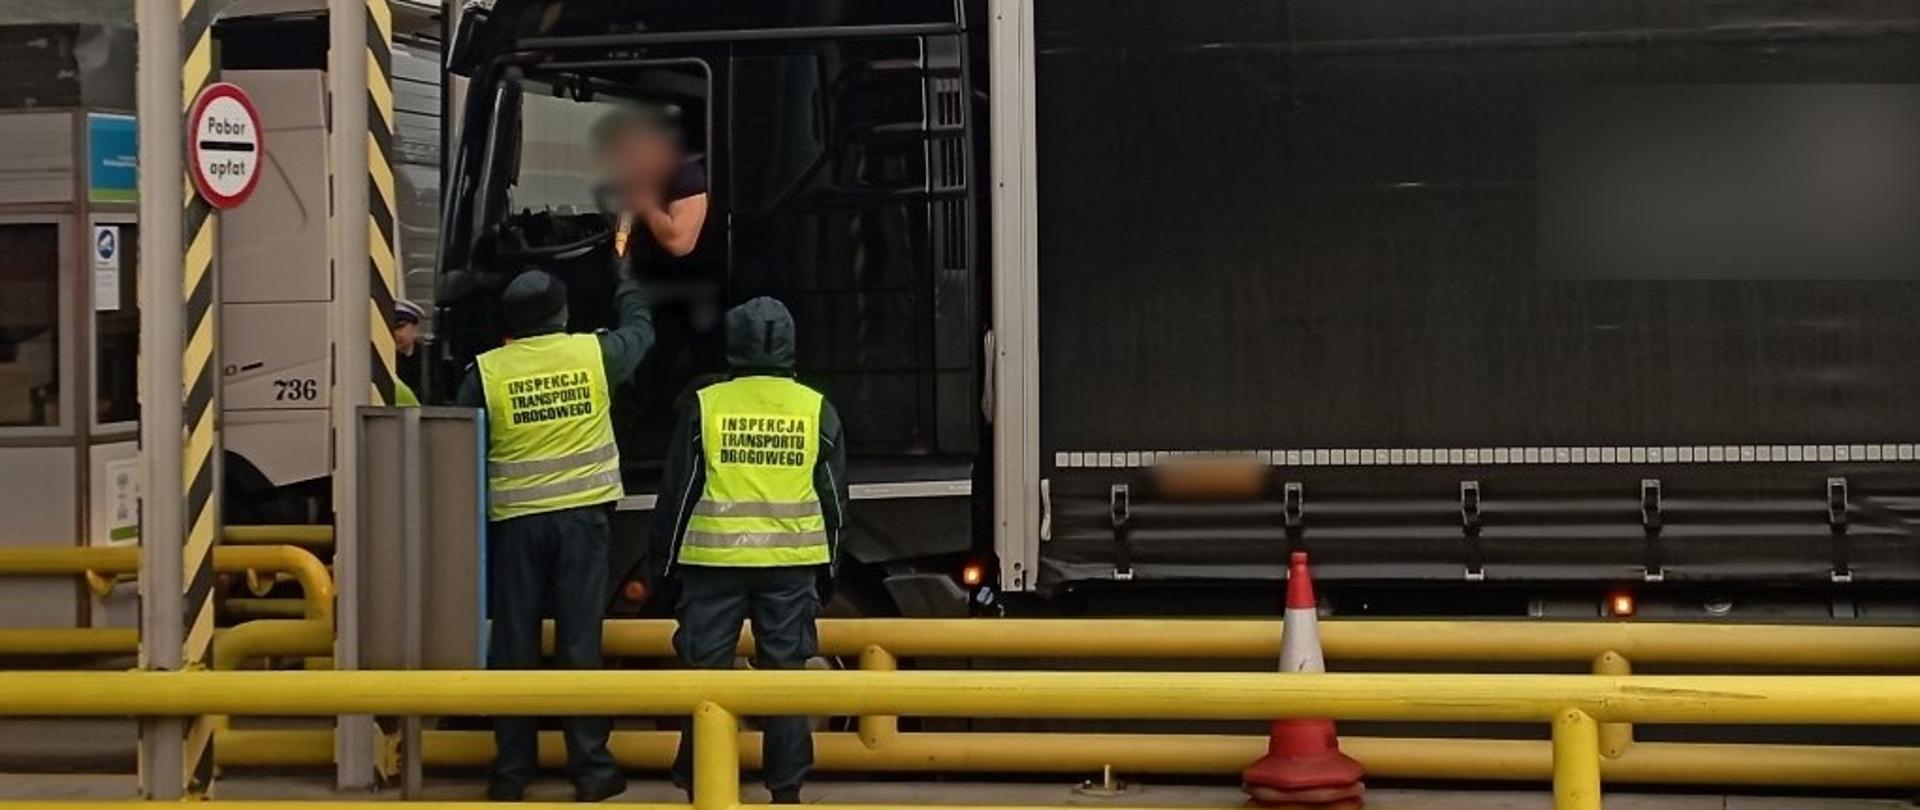 Inspektorzy lubuskiej Inspekcji Transportu Drogowego stoją obok kabiny ciężarówki zatrzymanej przed bramkami poboru opłat na autostradzie A2 i kontrolują trzeźwość kierowcy.